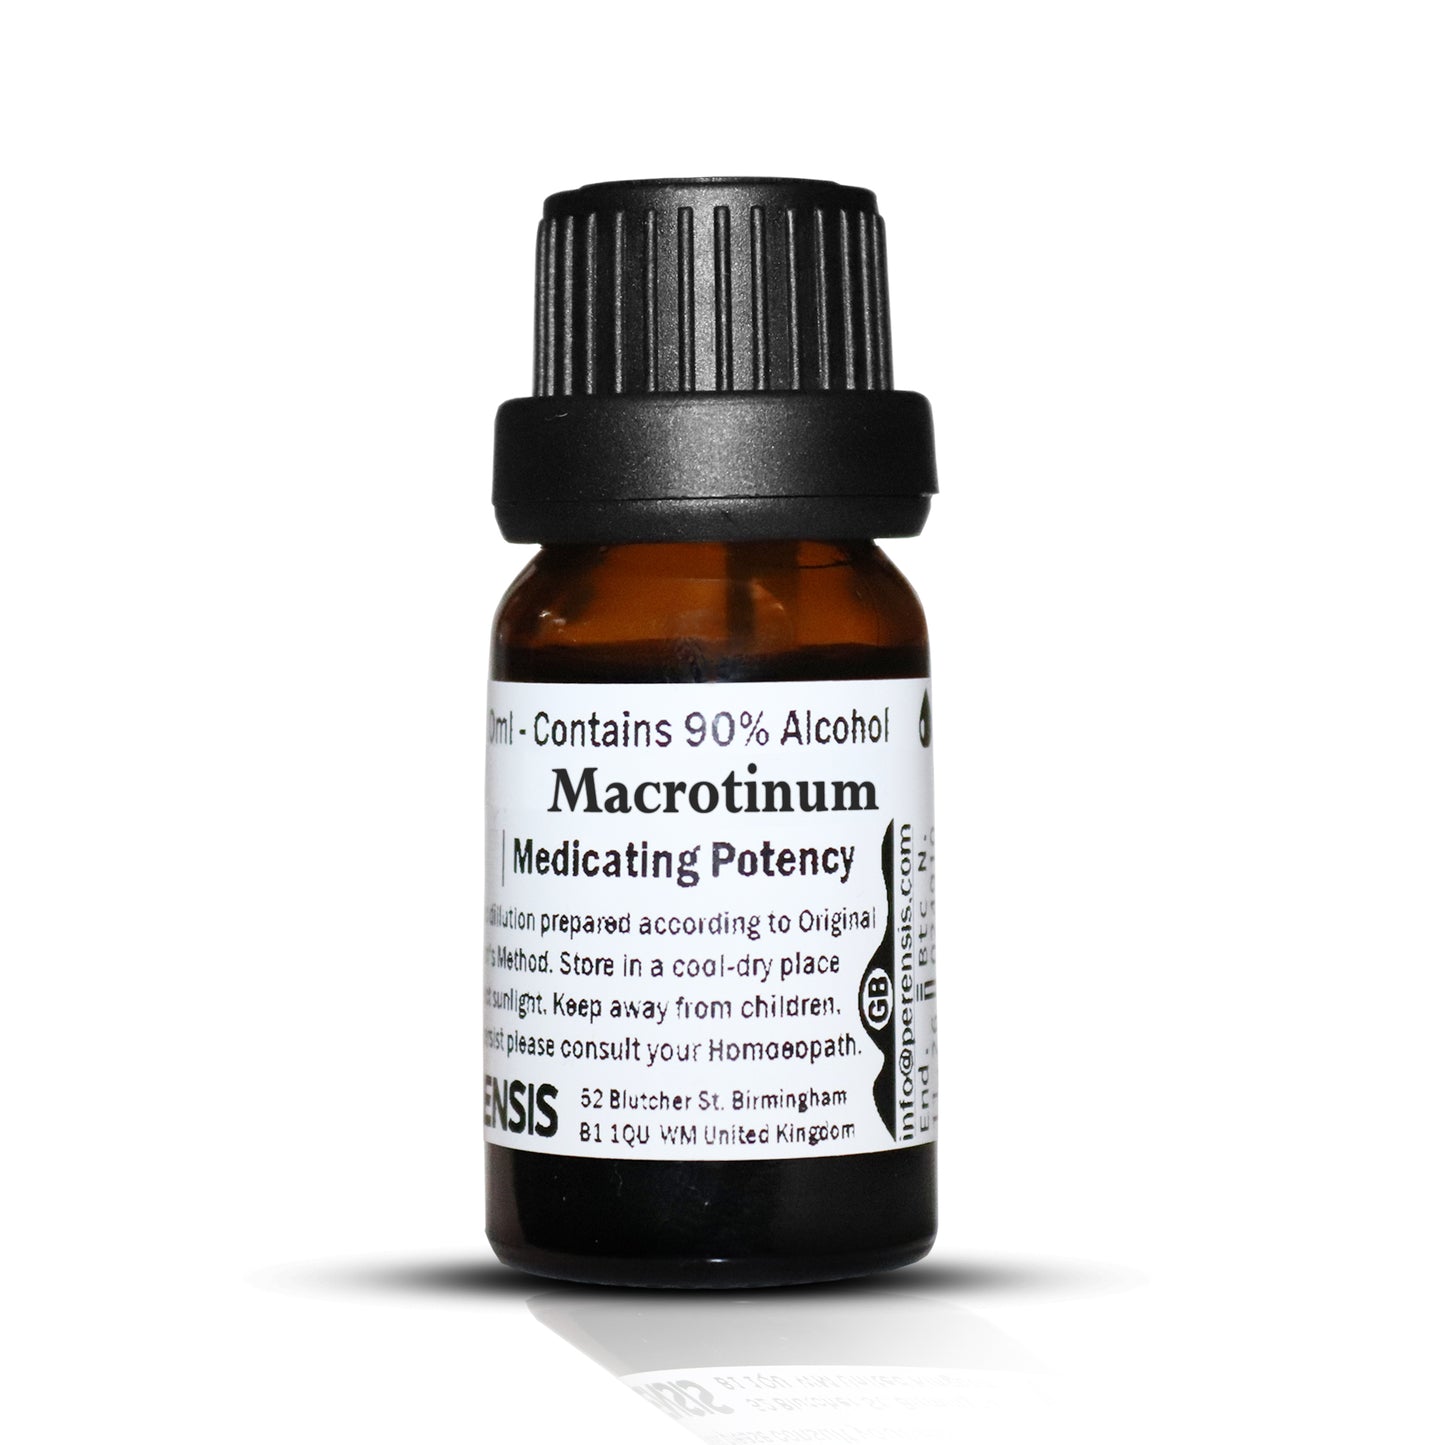 Macrotinum